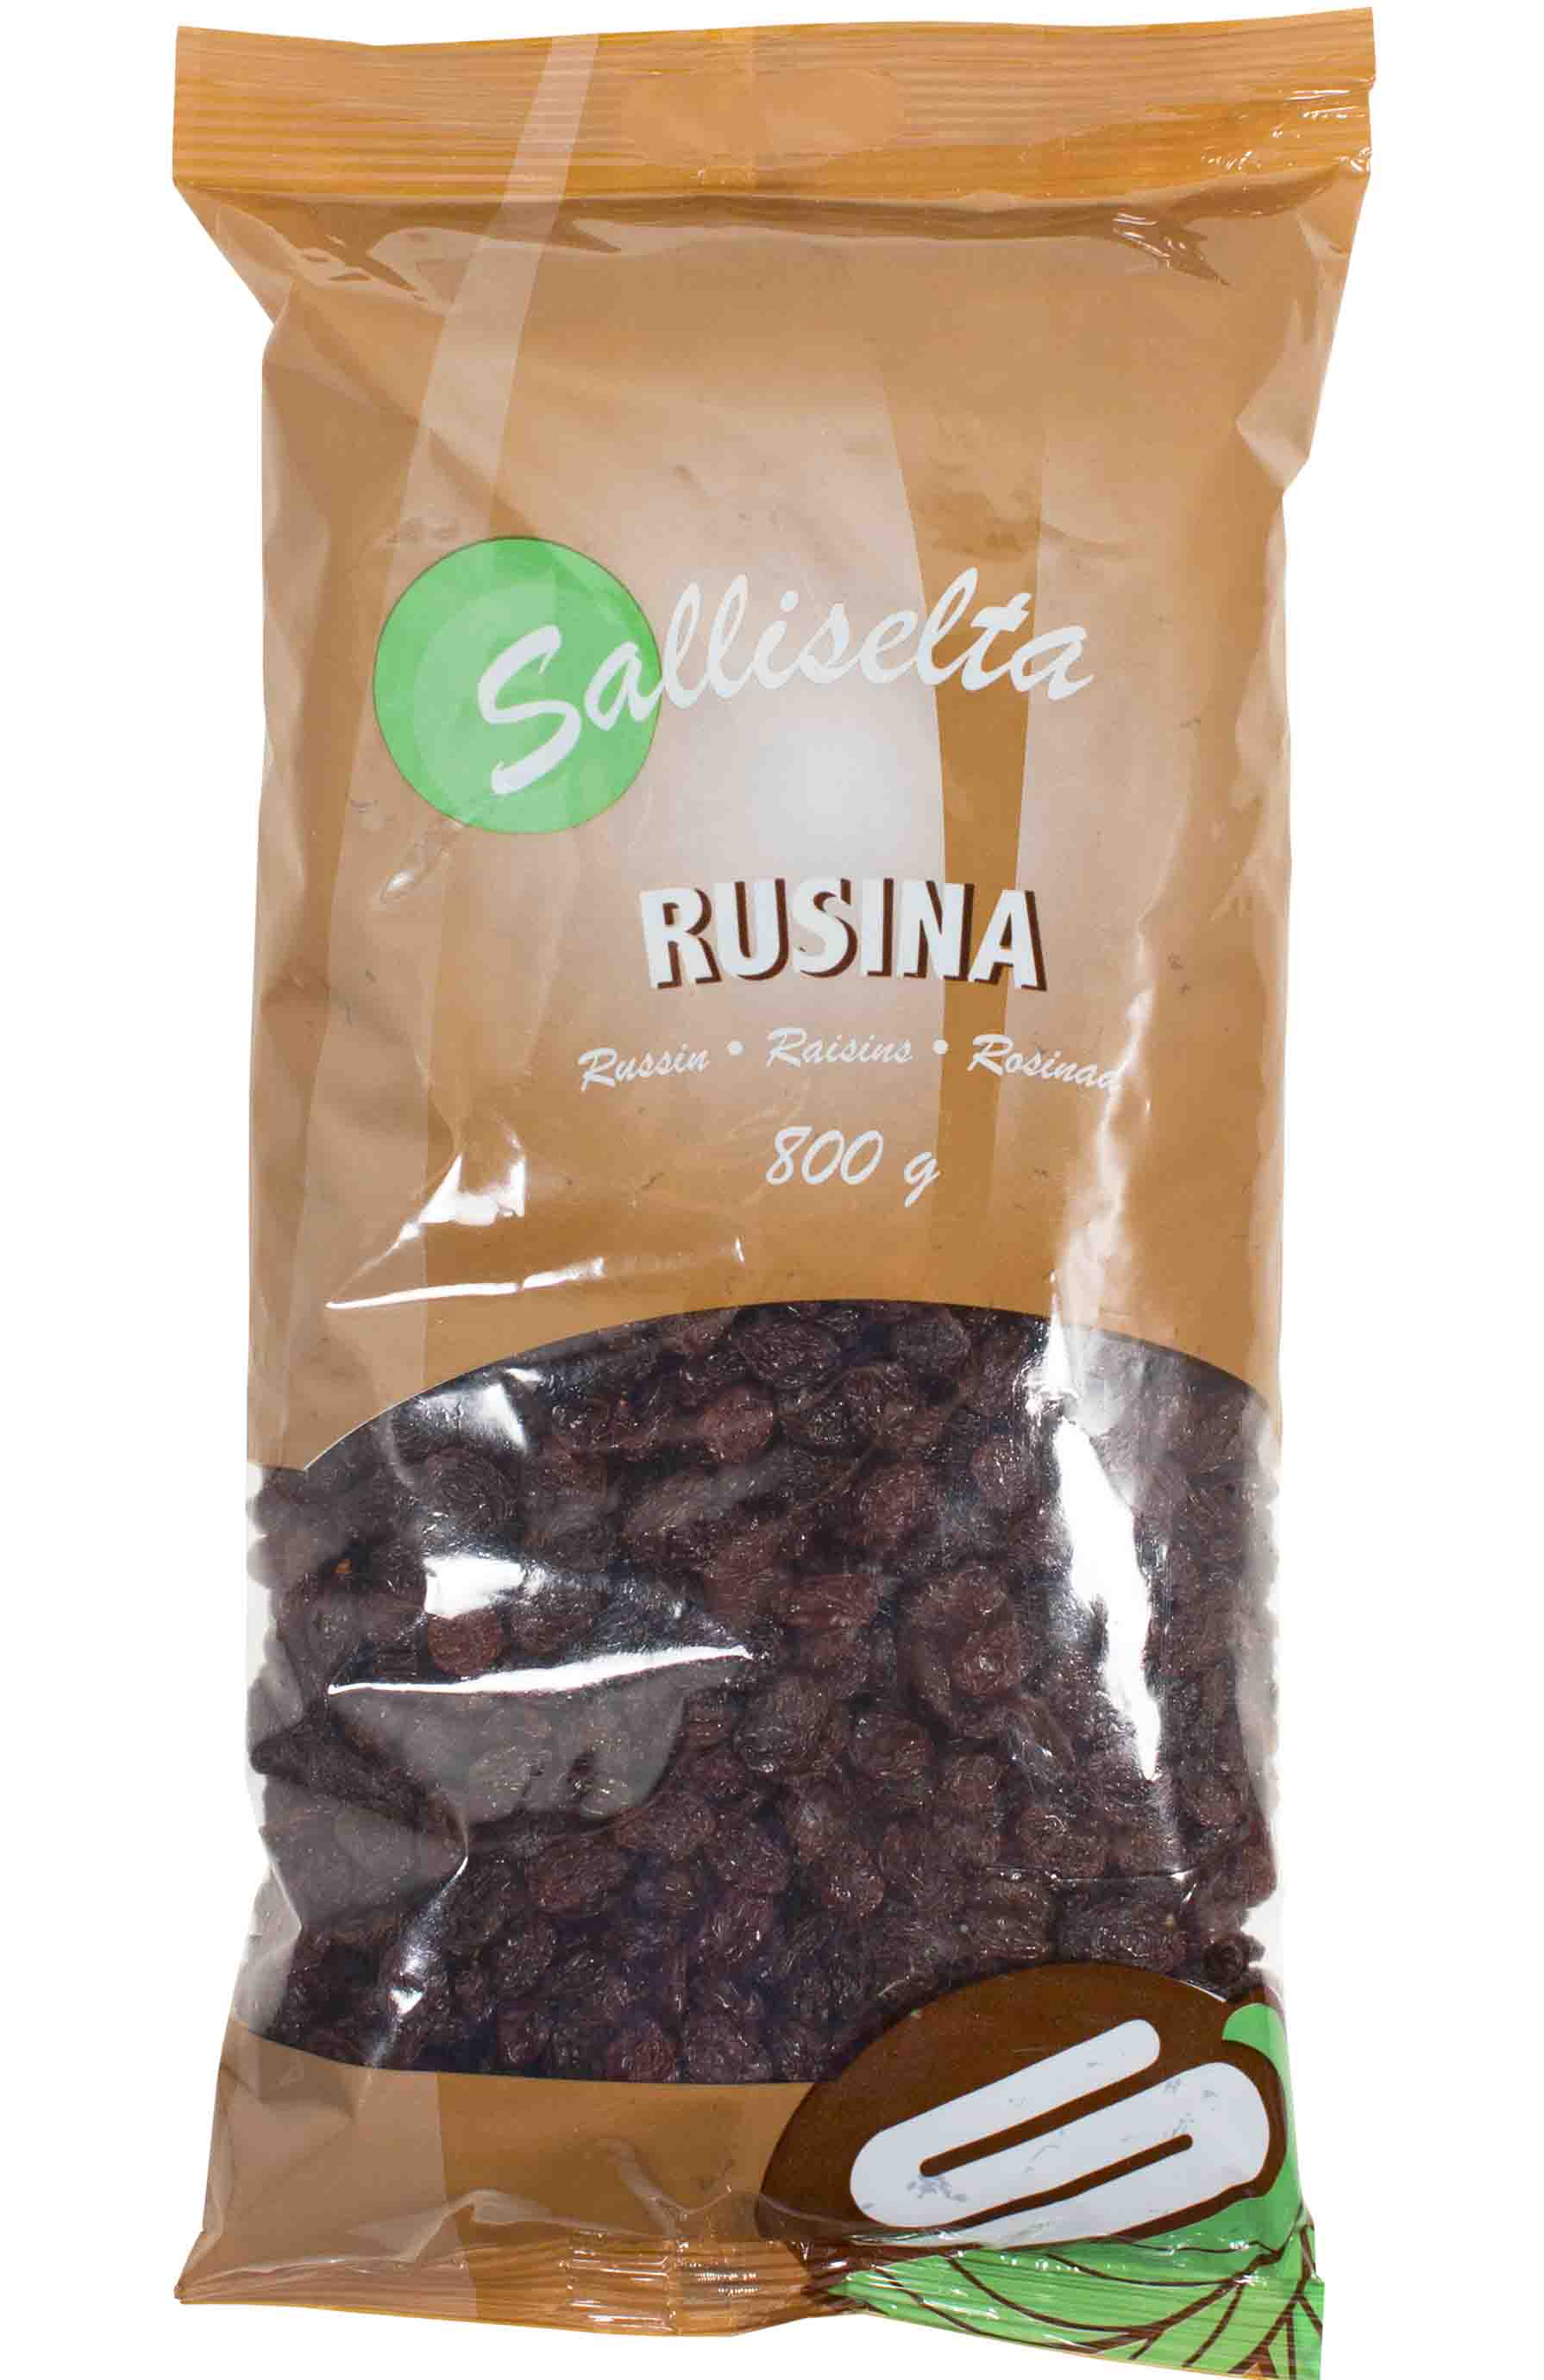 Raisins 800g